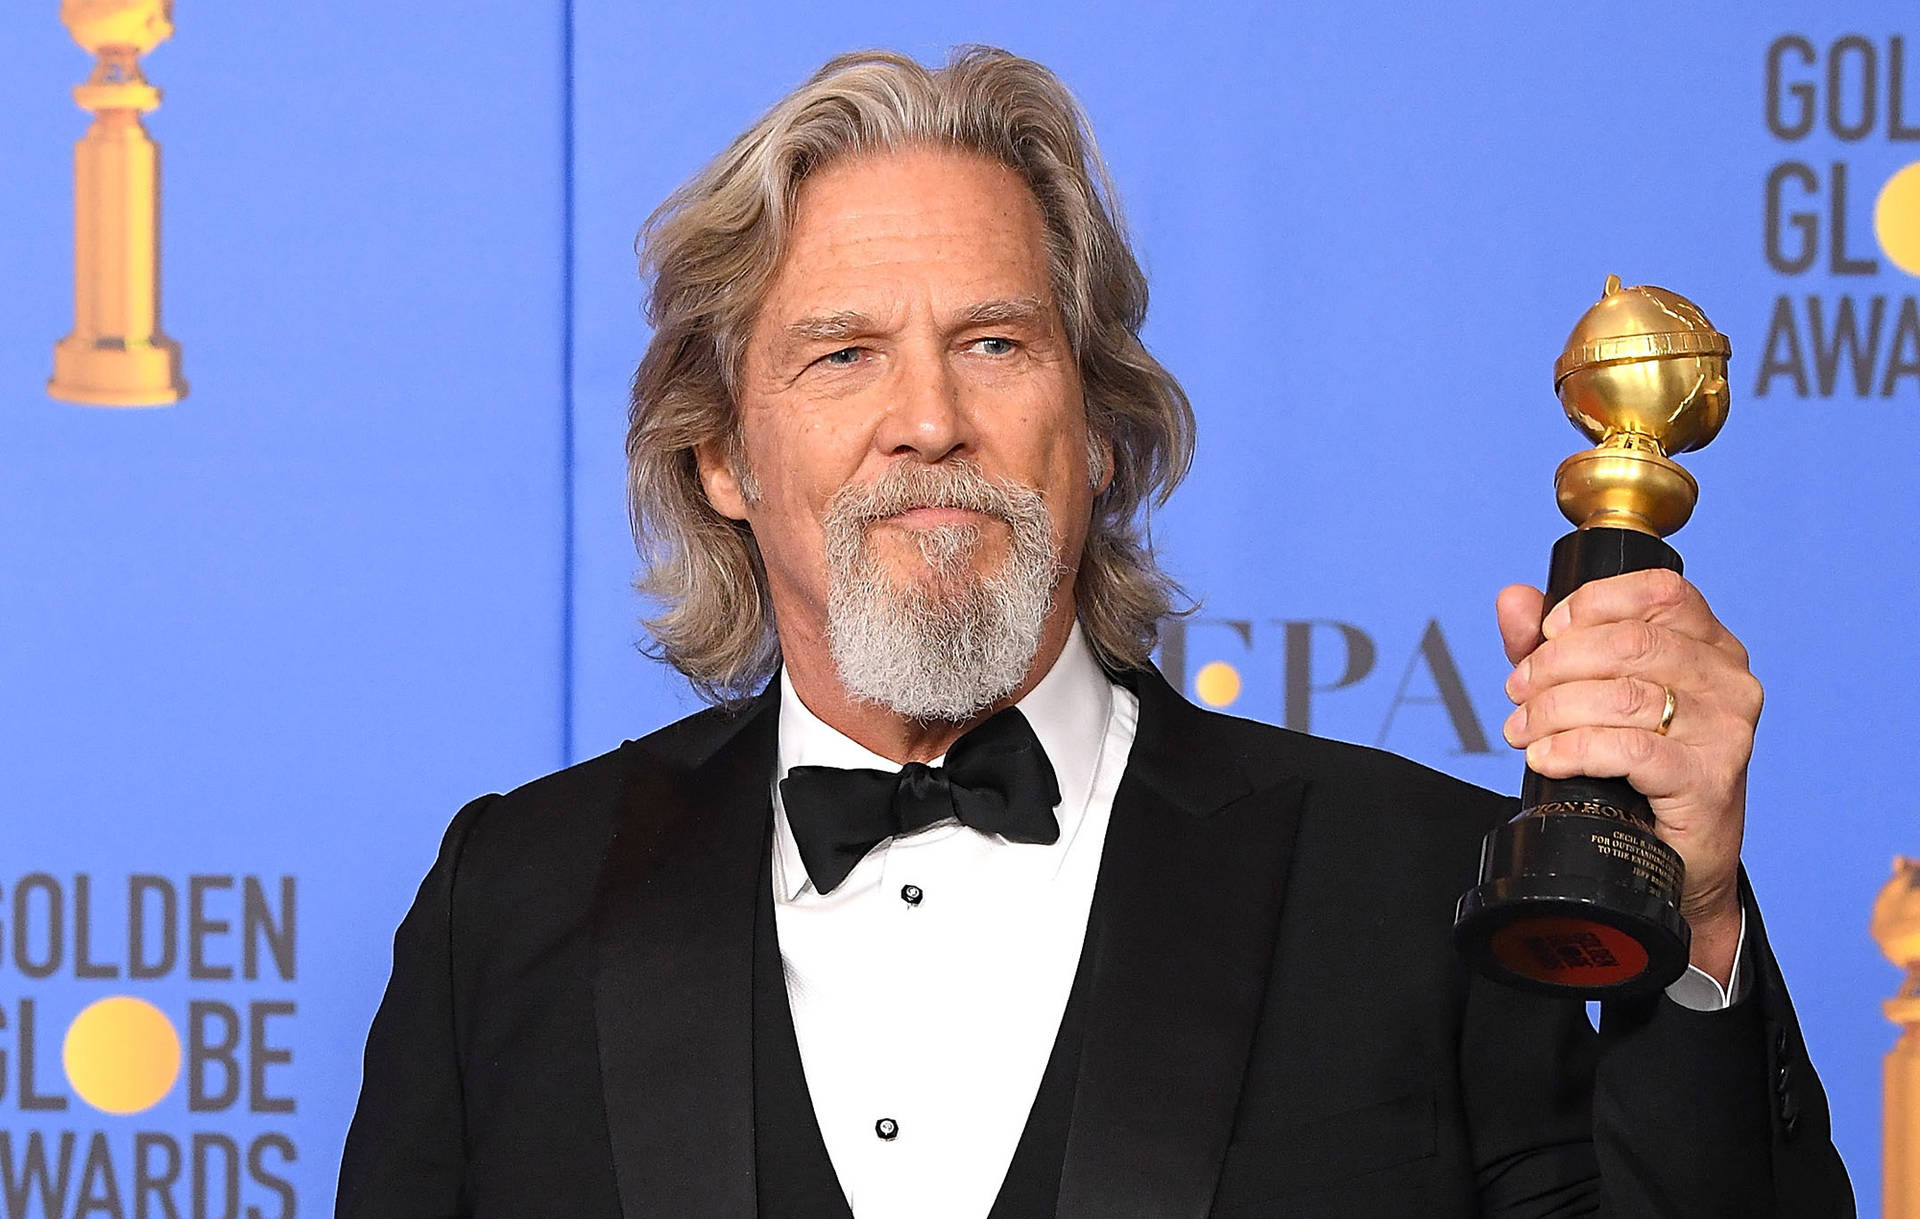 Actor Jeff Bridges Receiving Golden Globe Awards Wallpaper